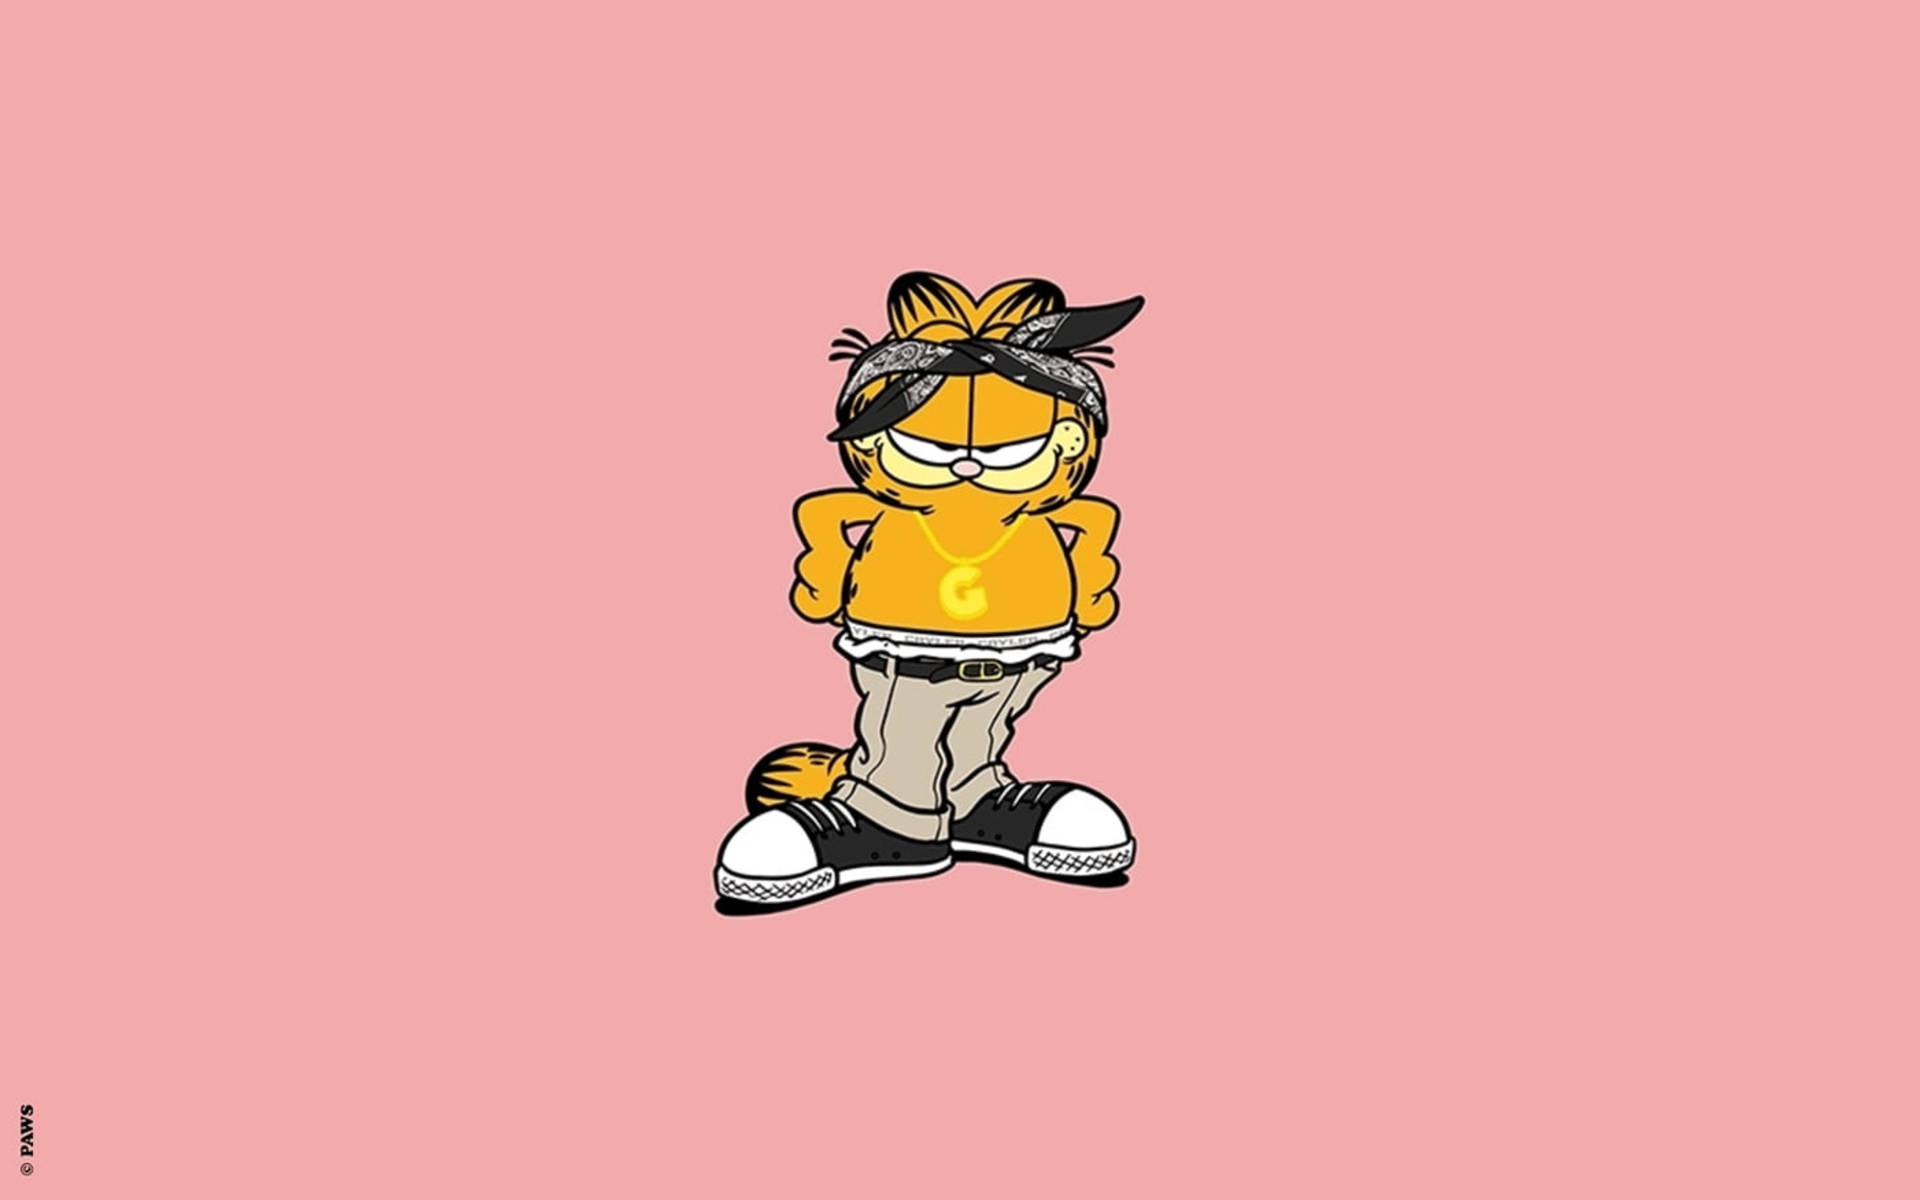 45+] Garfield The Cat Wallpaper - WallpaperSafari